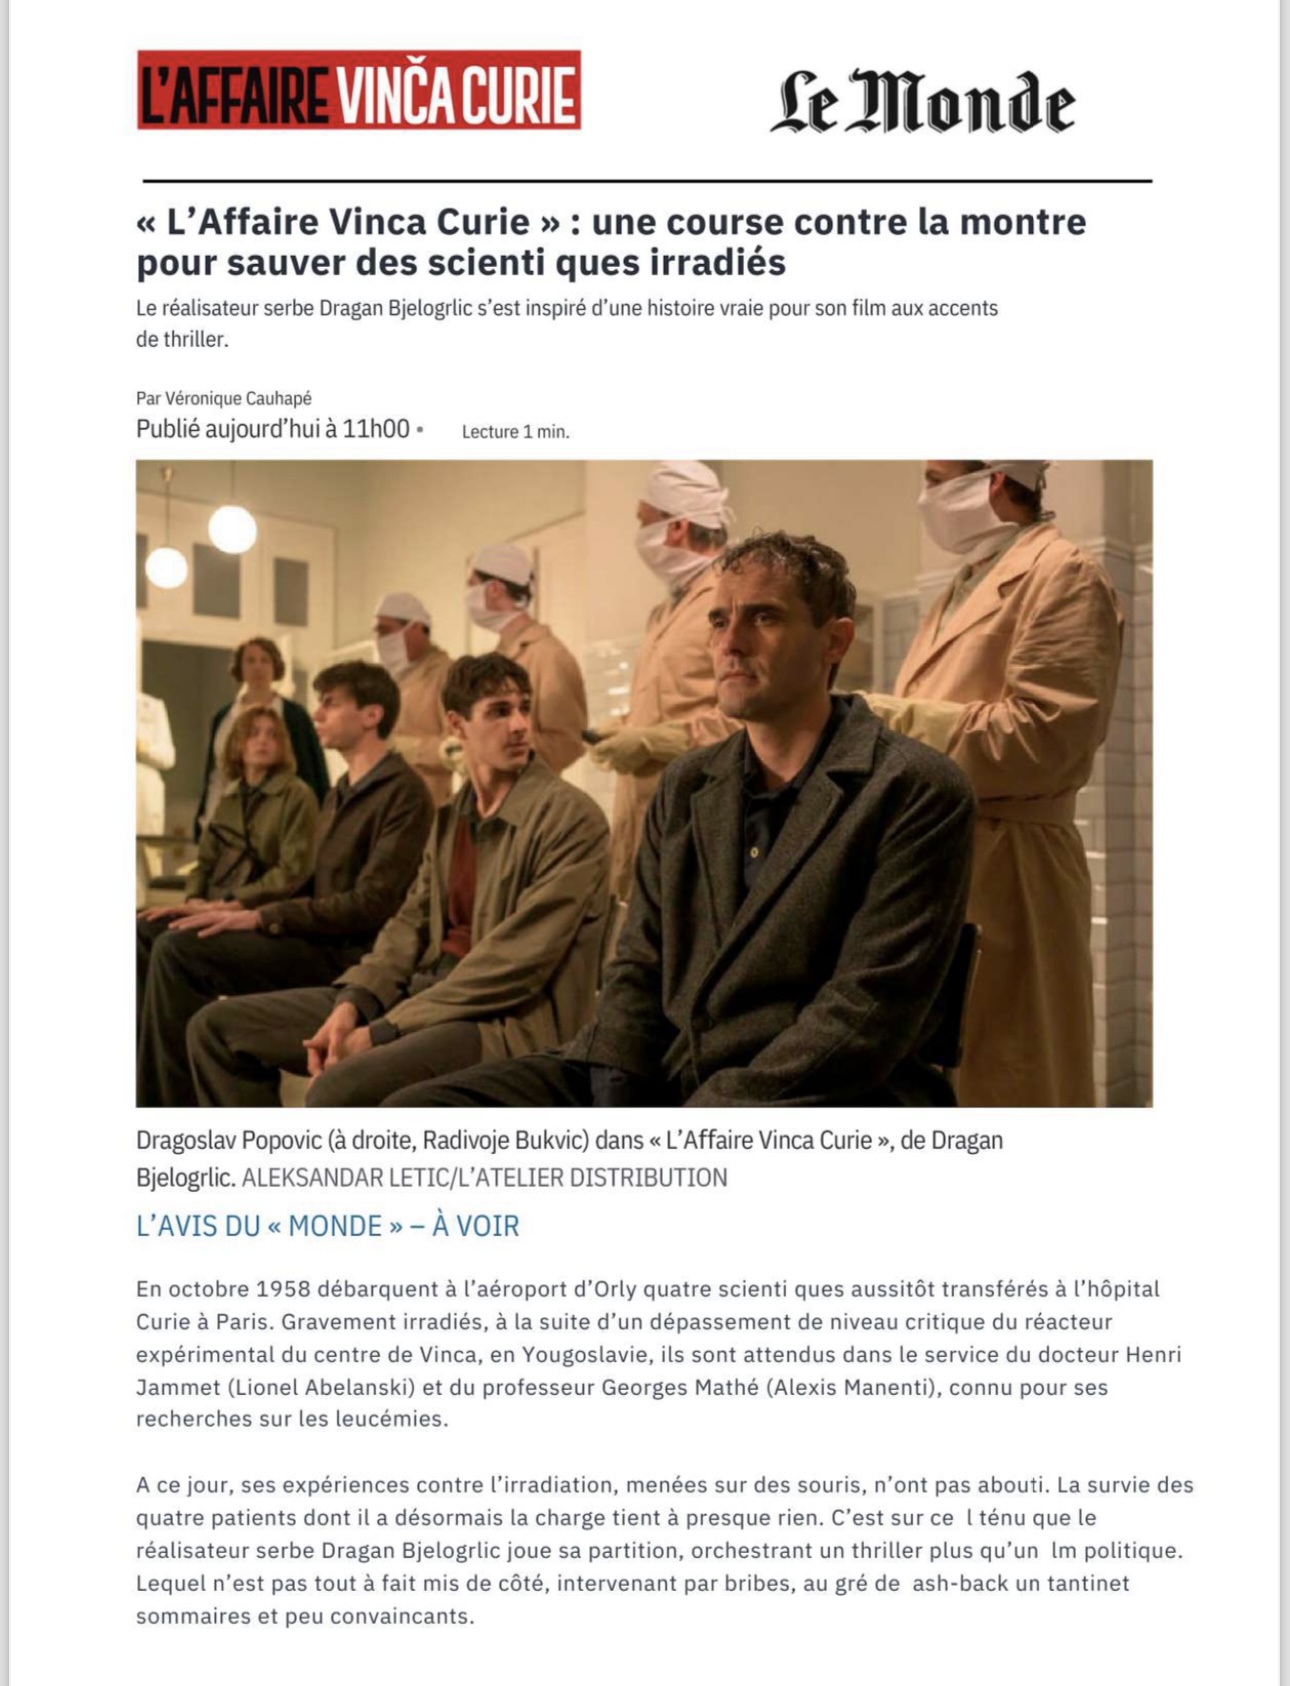 Film Dragana Bjelogrlića potpuno osvojio publiku u Francuskoj:Najveći francuski mediji bruje o “Čuvarima formule”